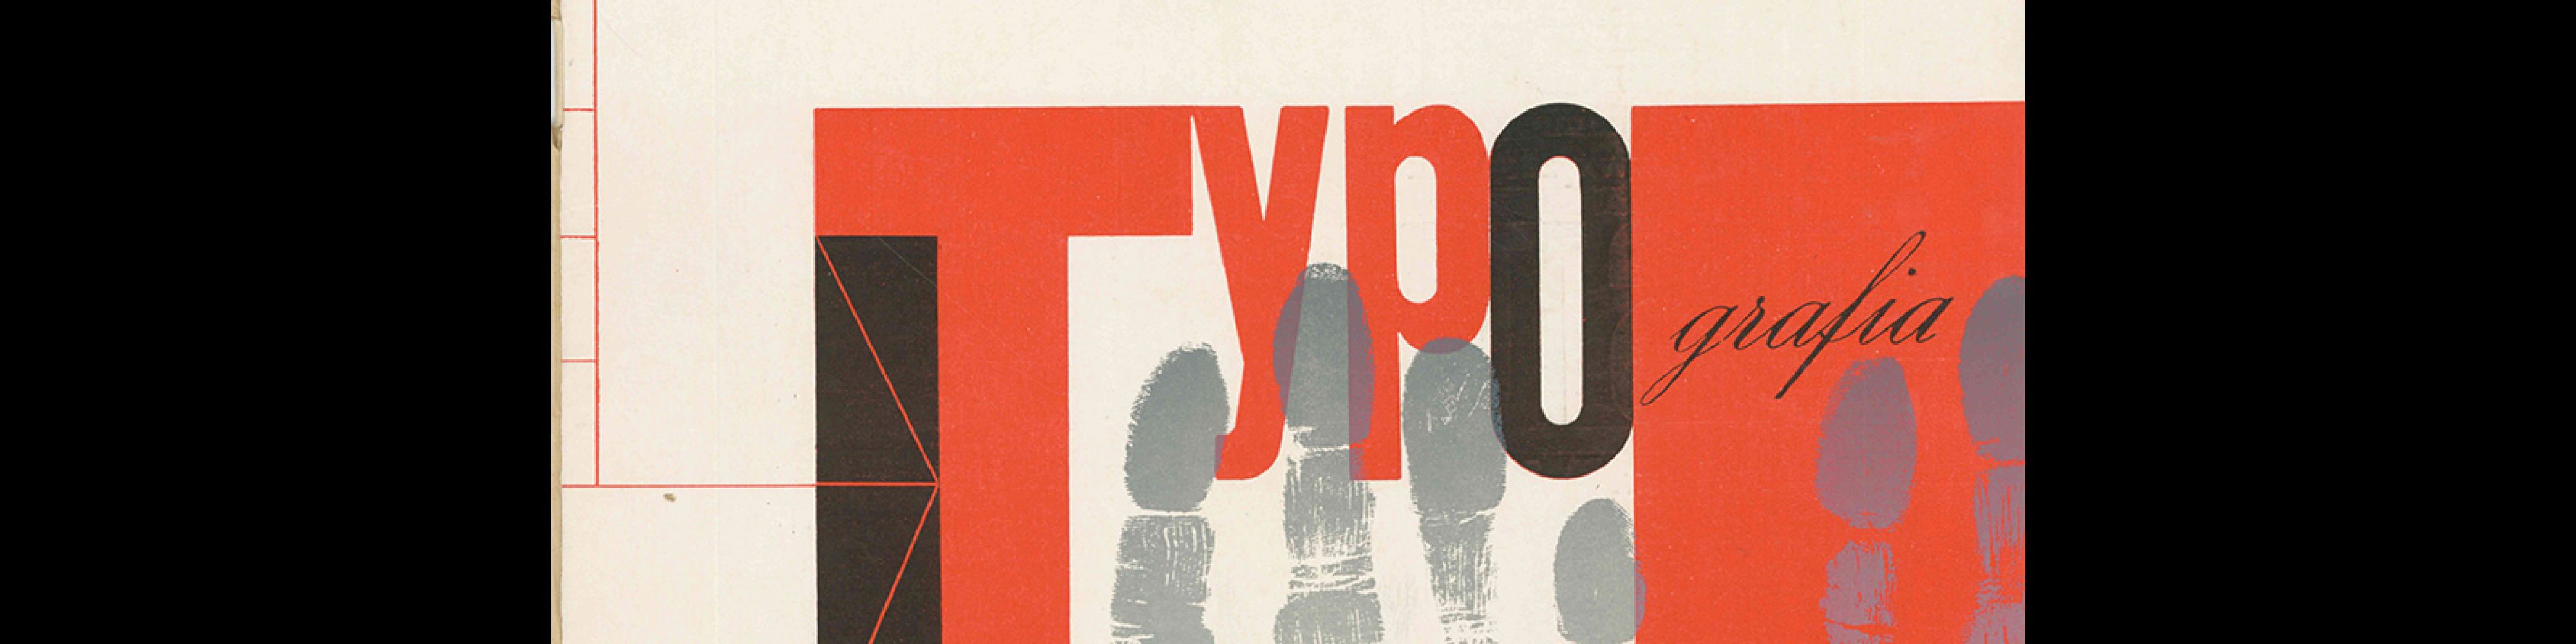 Typografia, ročník 66, 04, 1963. Cover design by Vladimír Janský